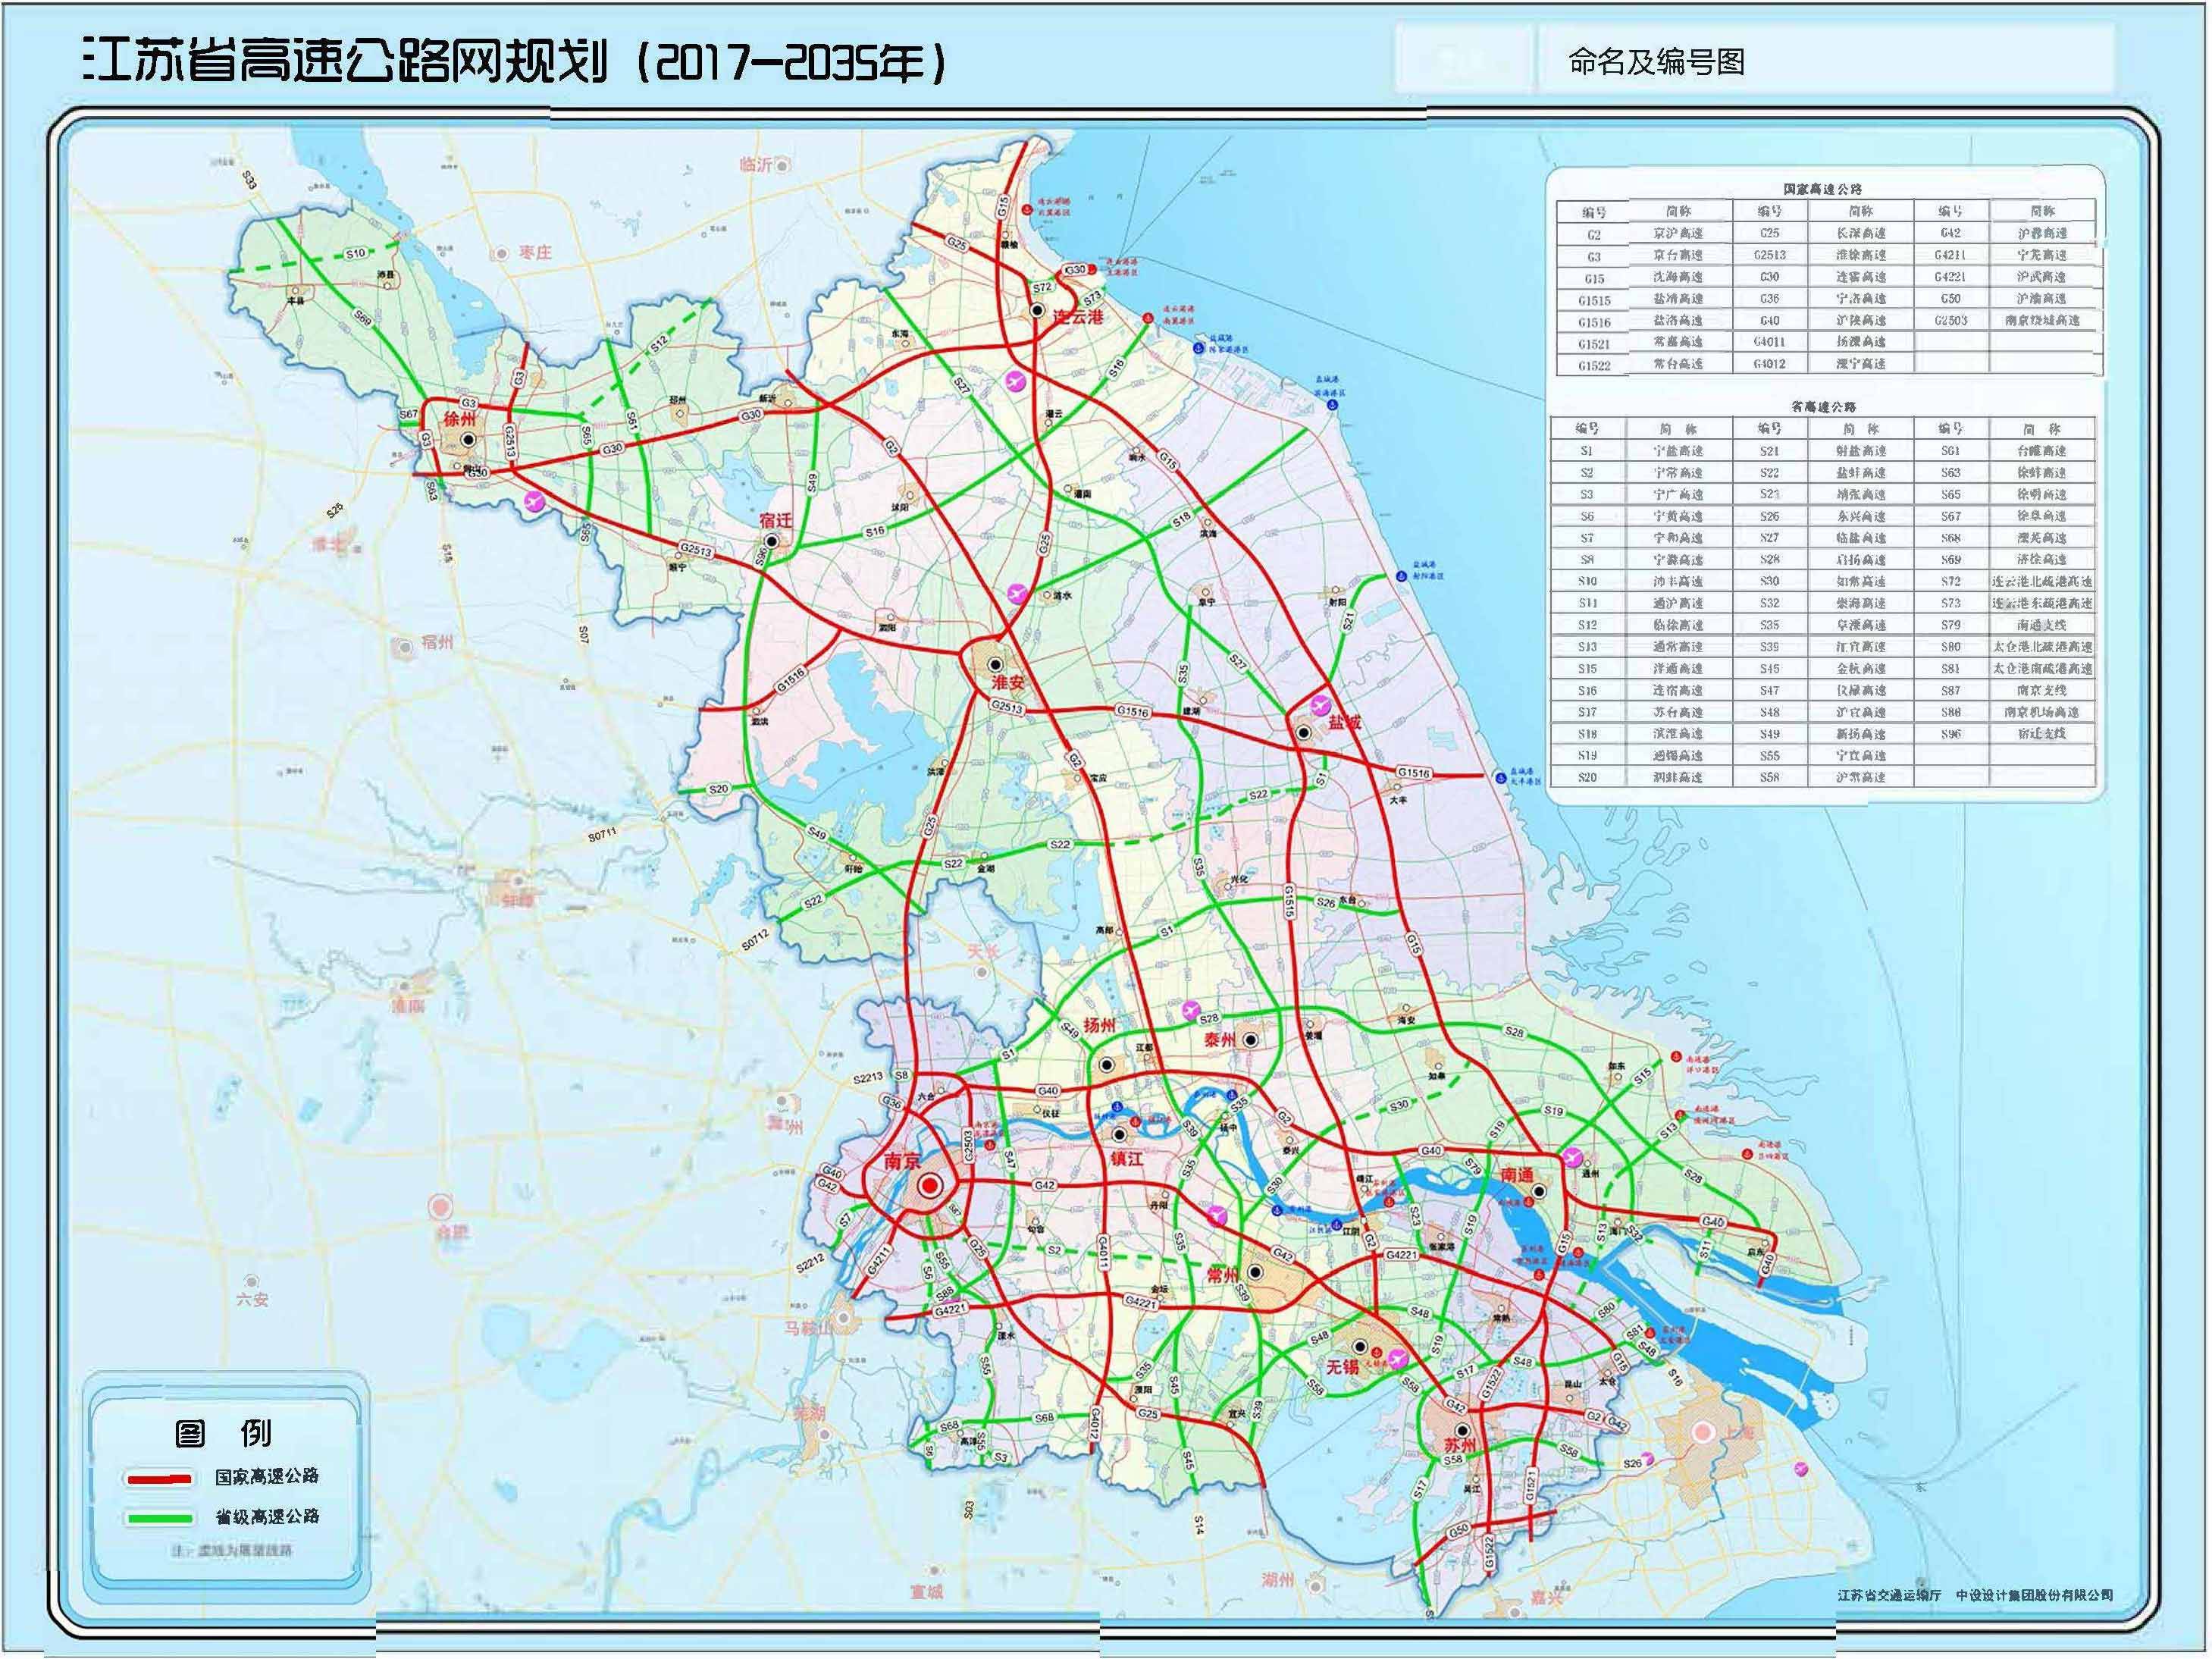 江苏这条高速公路总算开工了,长126